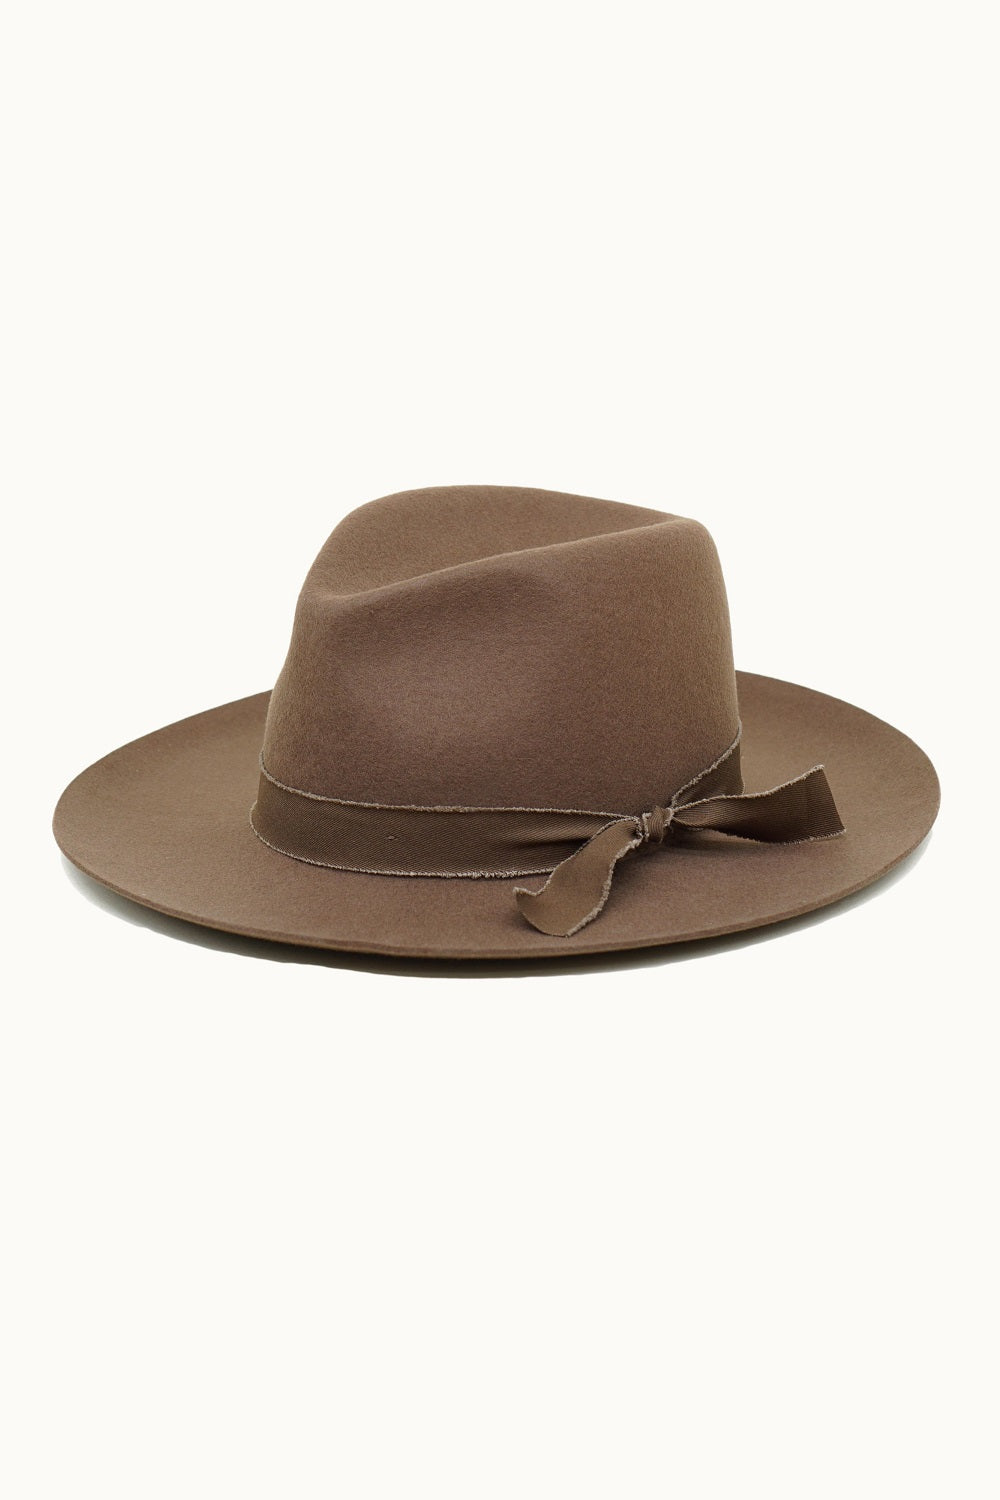 Olive & Pique: Let You Know Beige Wide Brim Hat – Shop the Mint